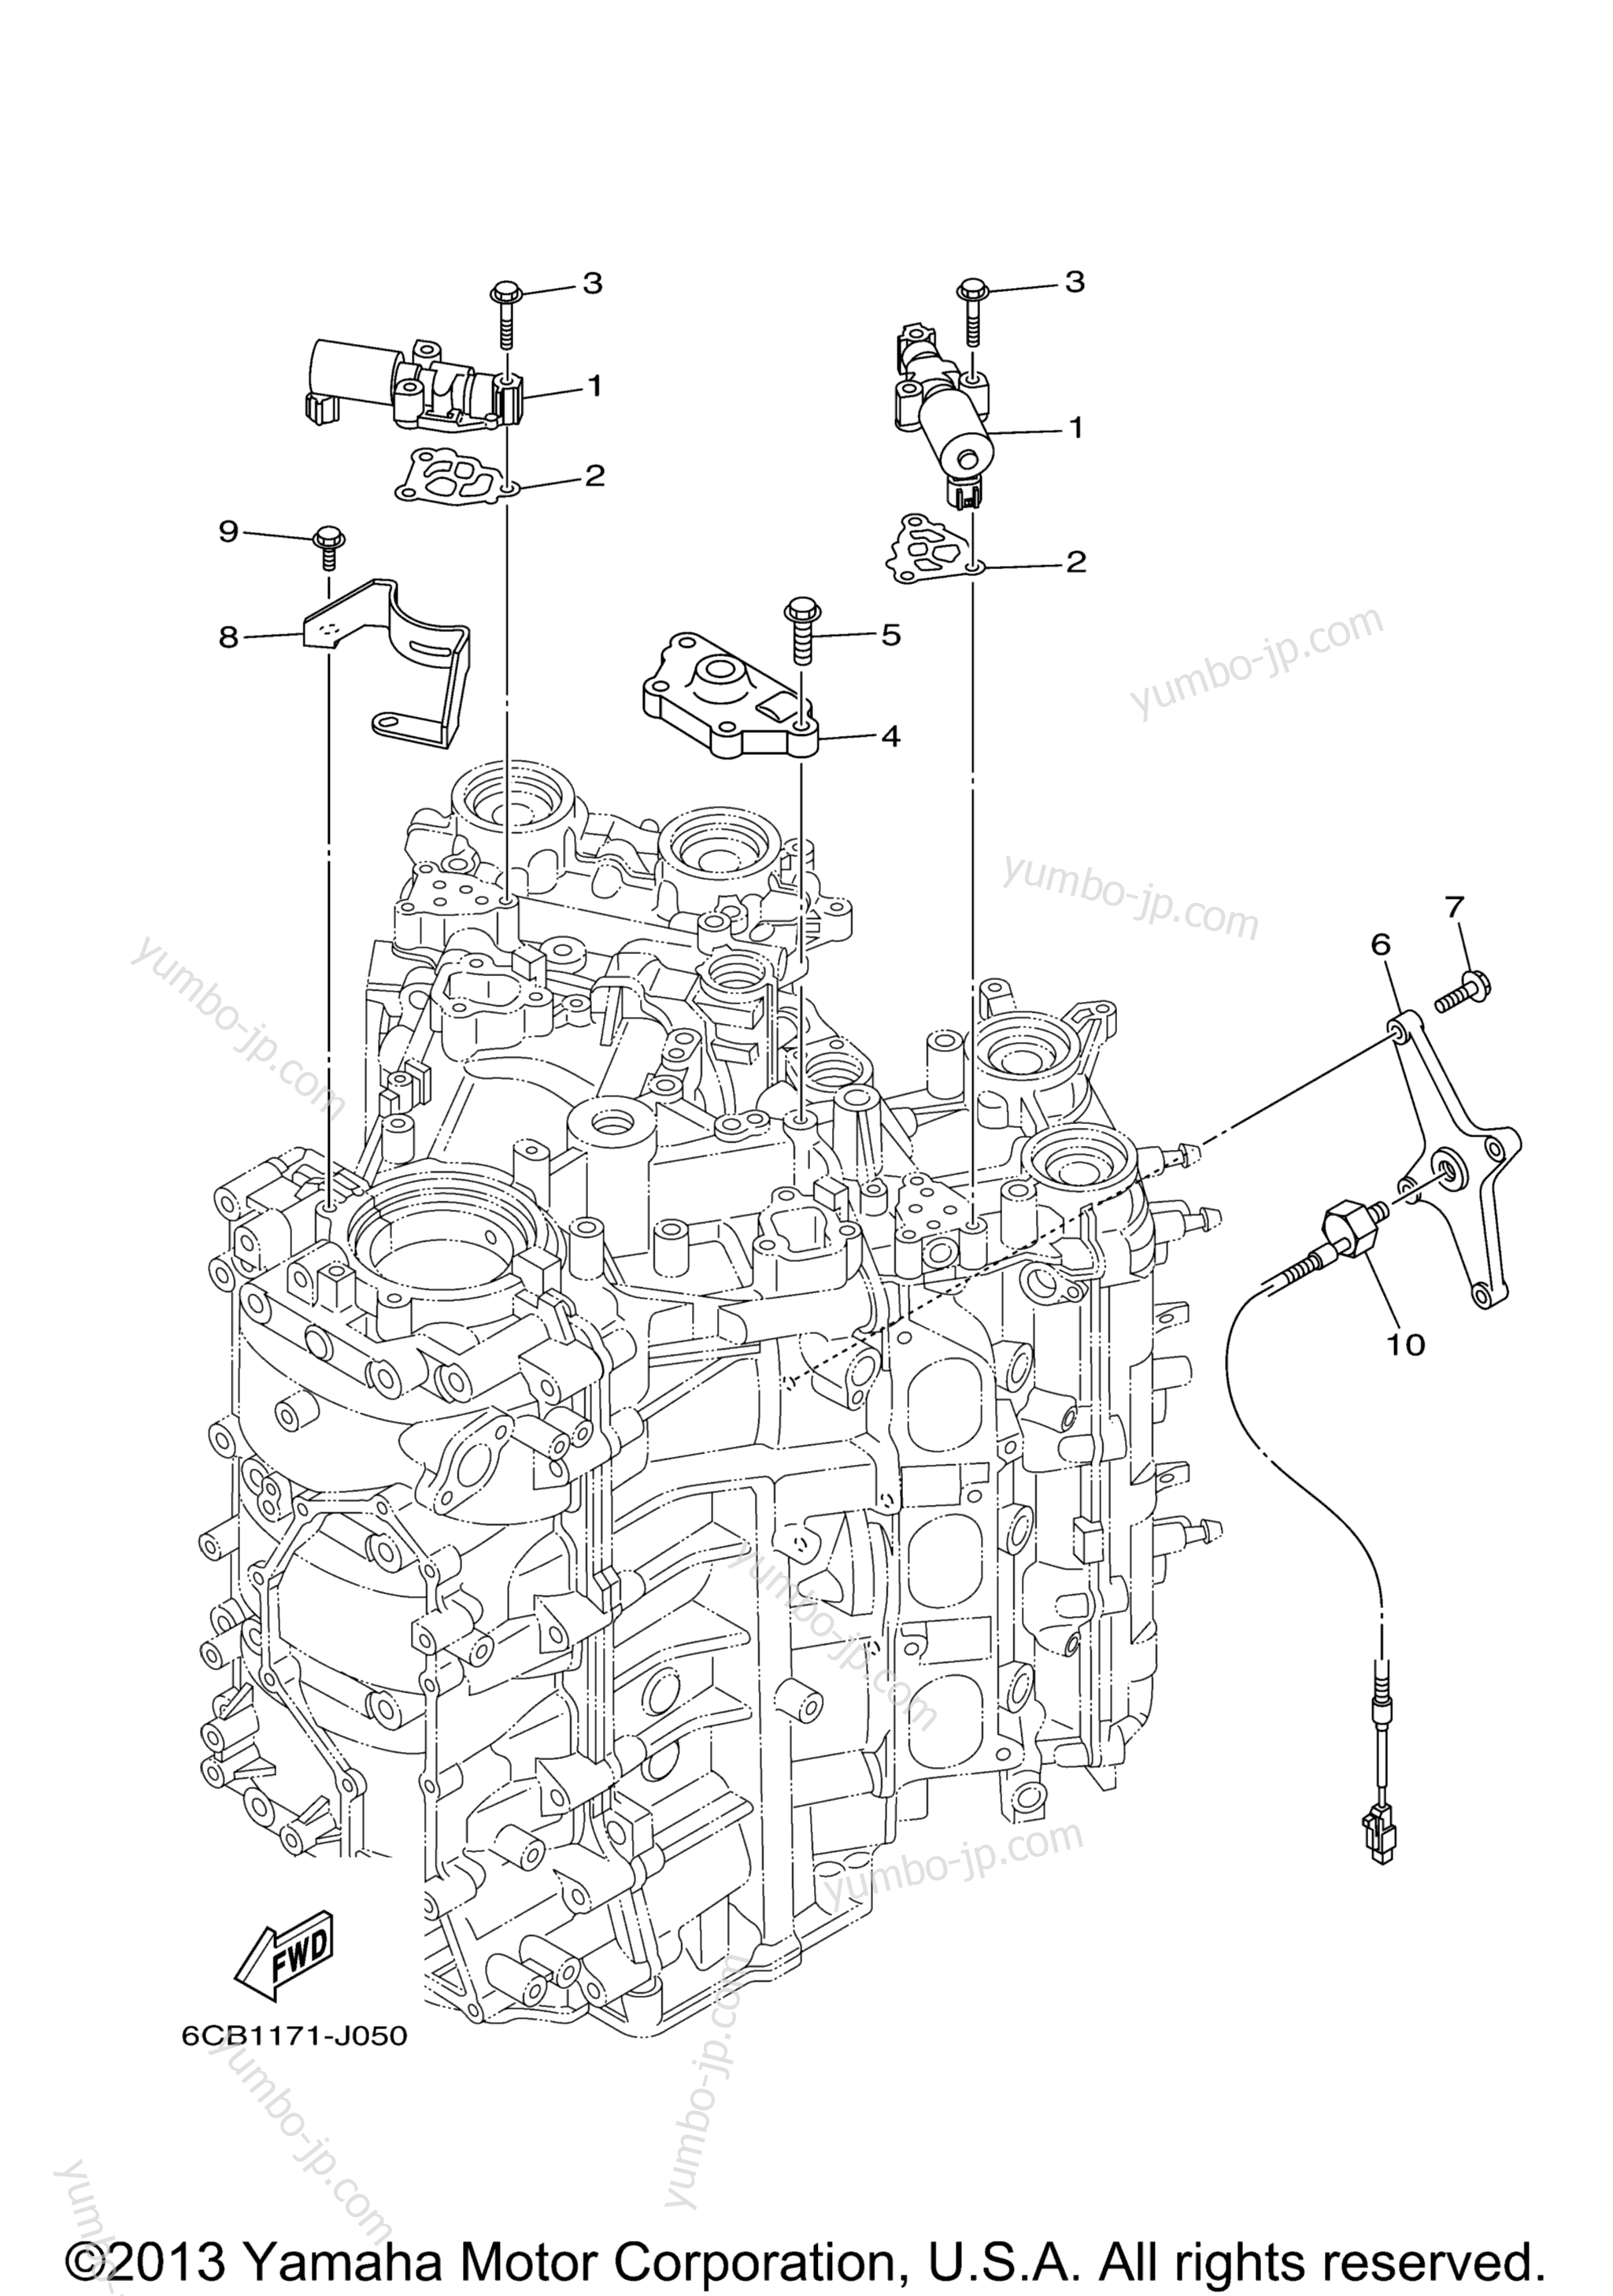 Cylinder Crankcase 3 для лодочных моторов YAMAHA VF200LA_01 (0112) 2006 г.